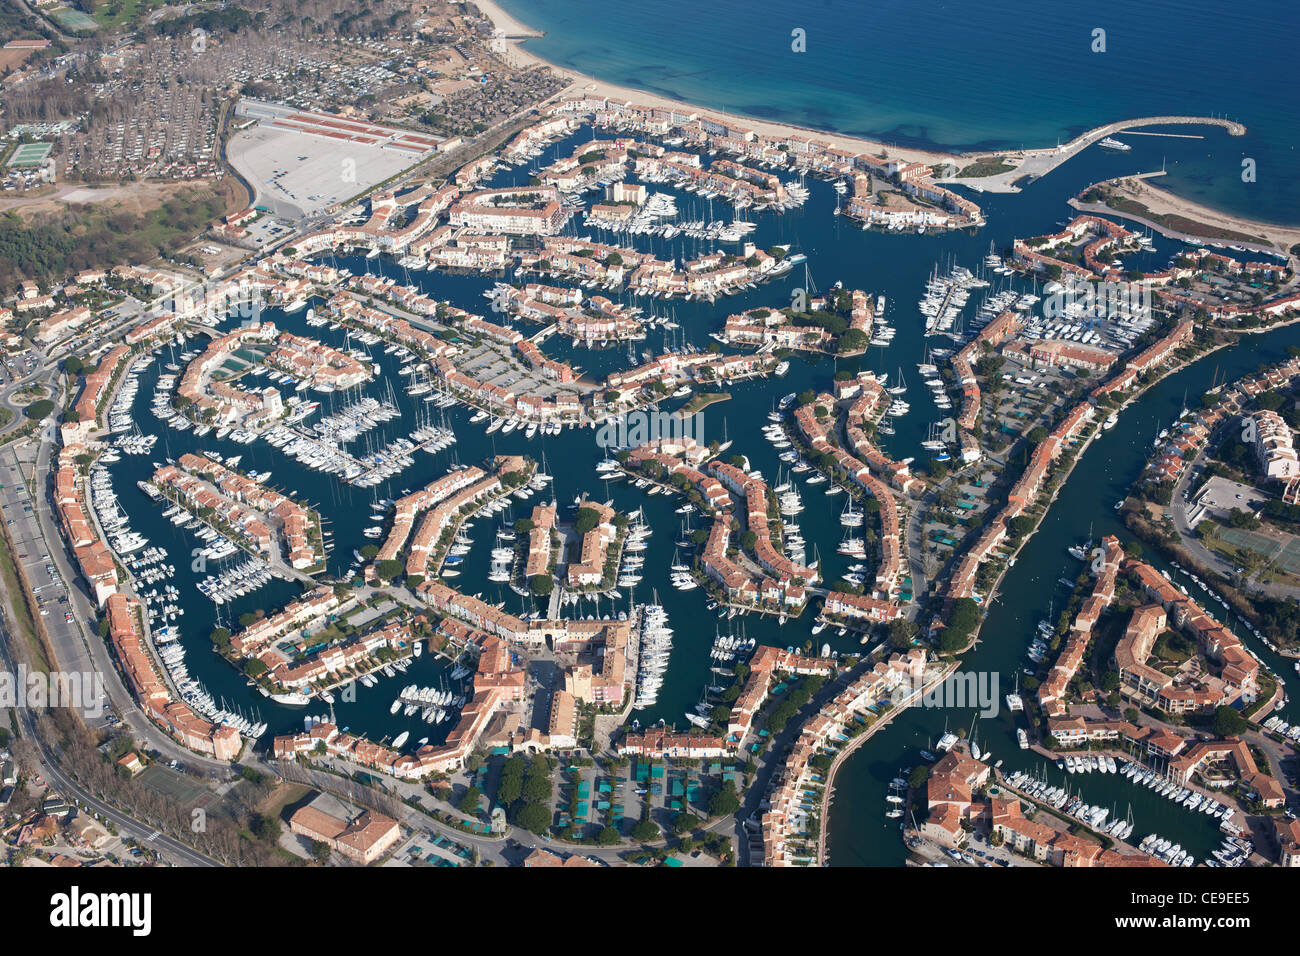 VUE AÉRIENNE.La ville balnéaire de Port Grimaud, créée dans les années 60 sur un terrain marécageux.Golfe de Saint-Tropez, Var, Côte d'Azur, France. Banque D'Images